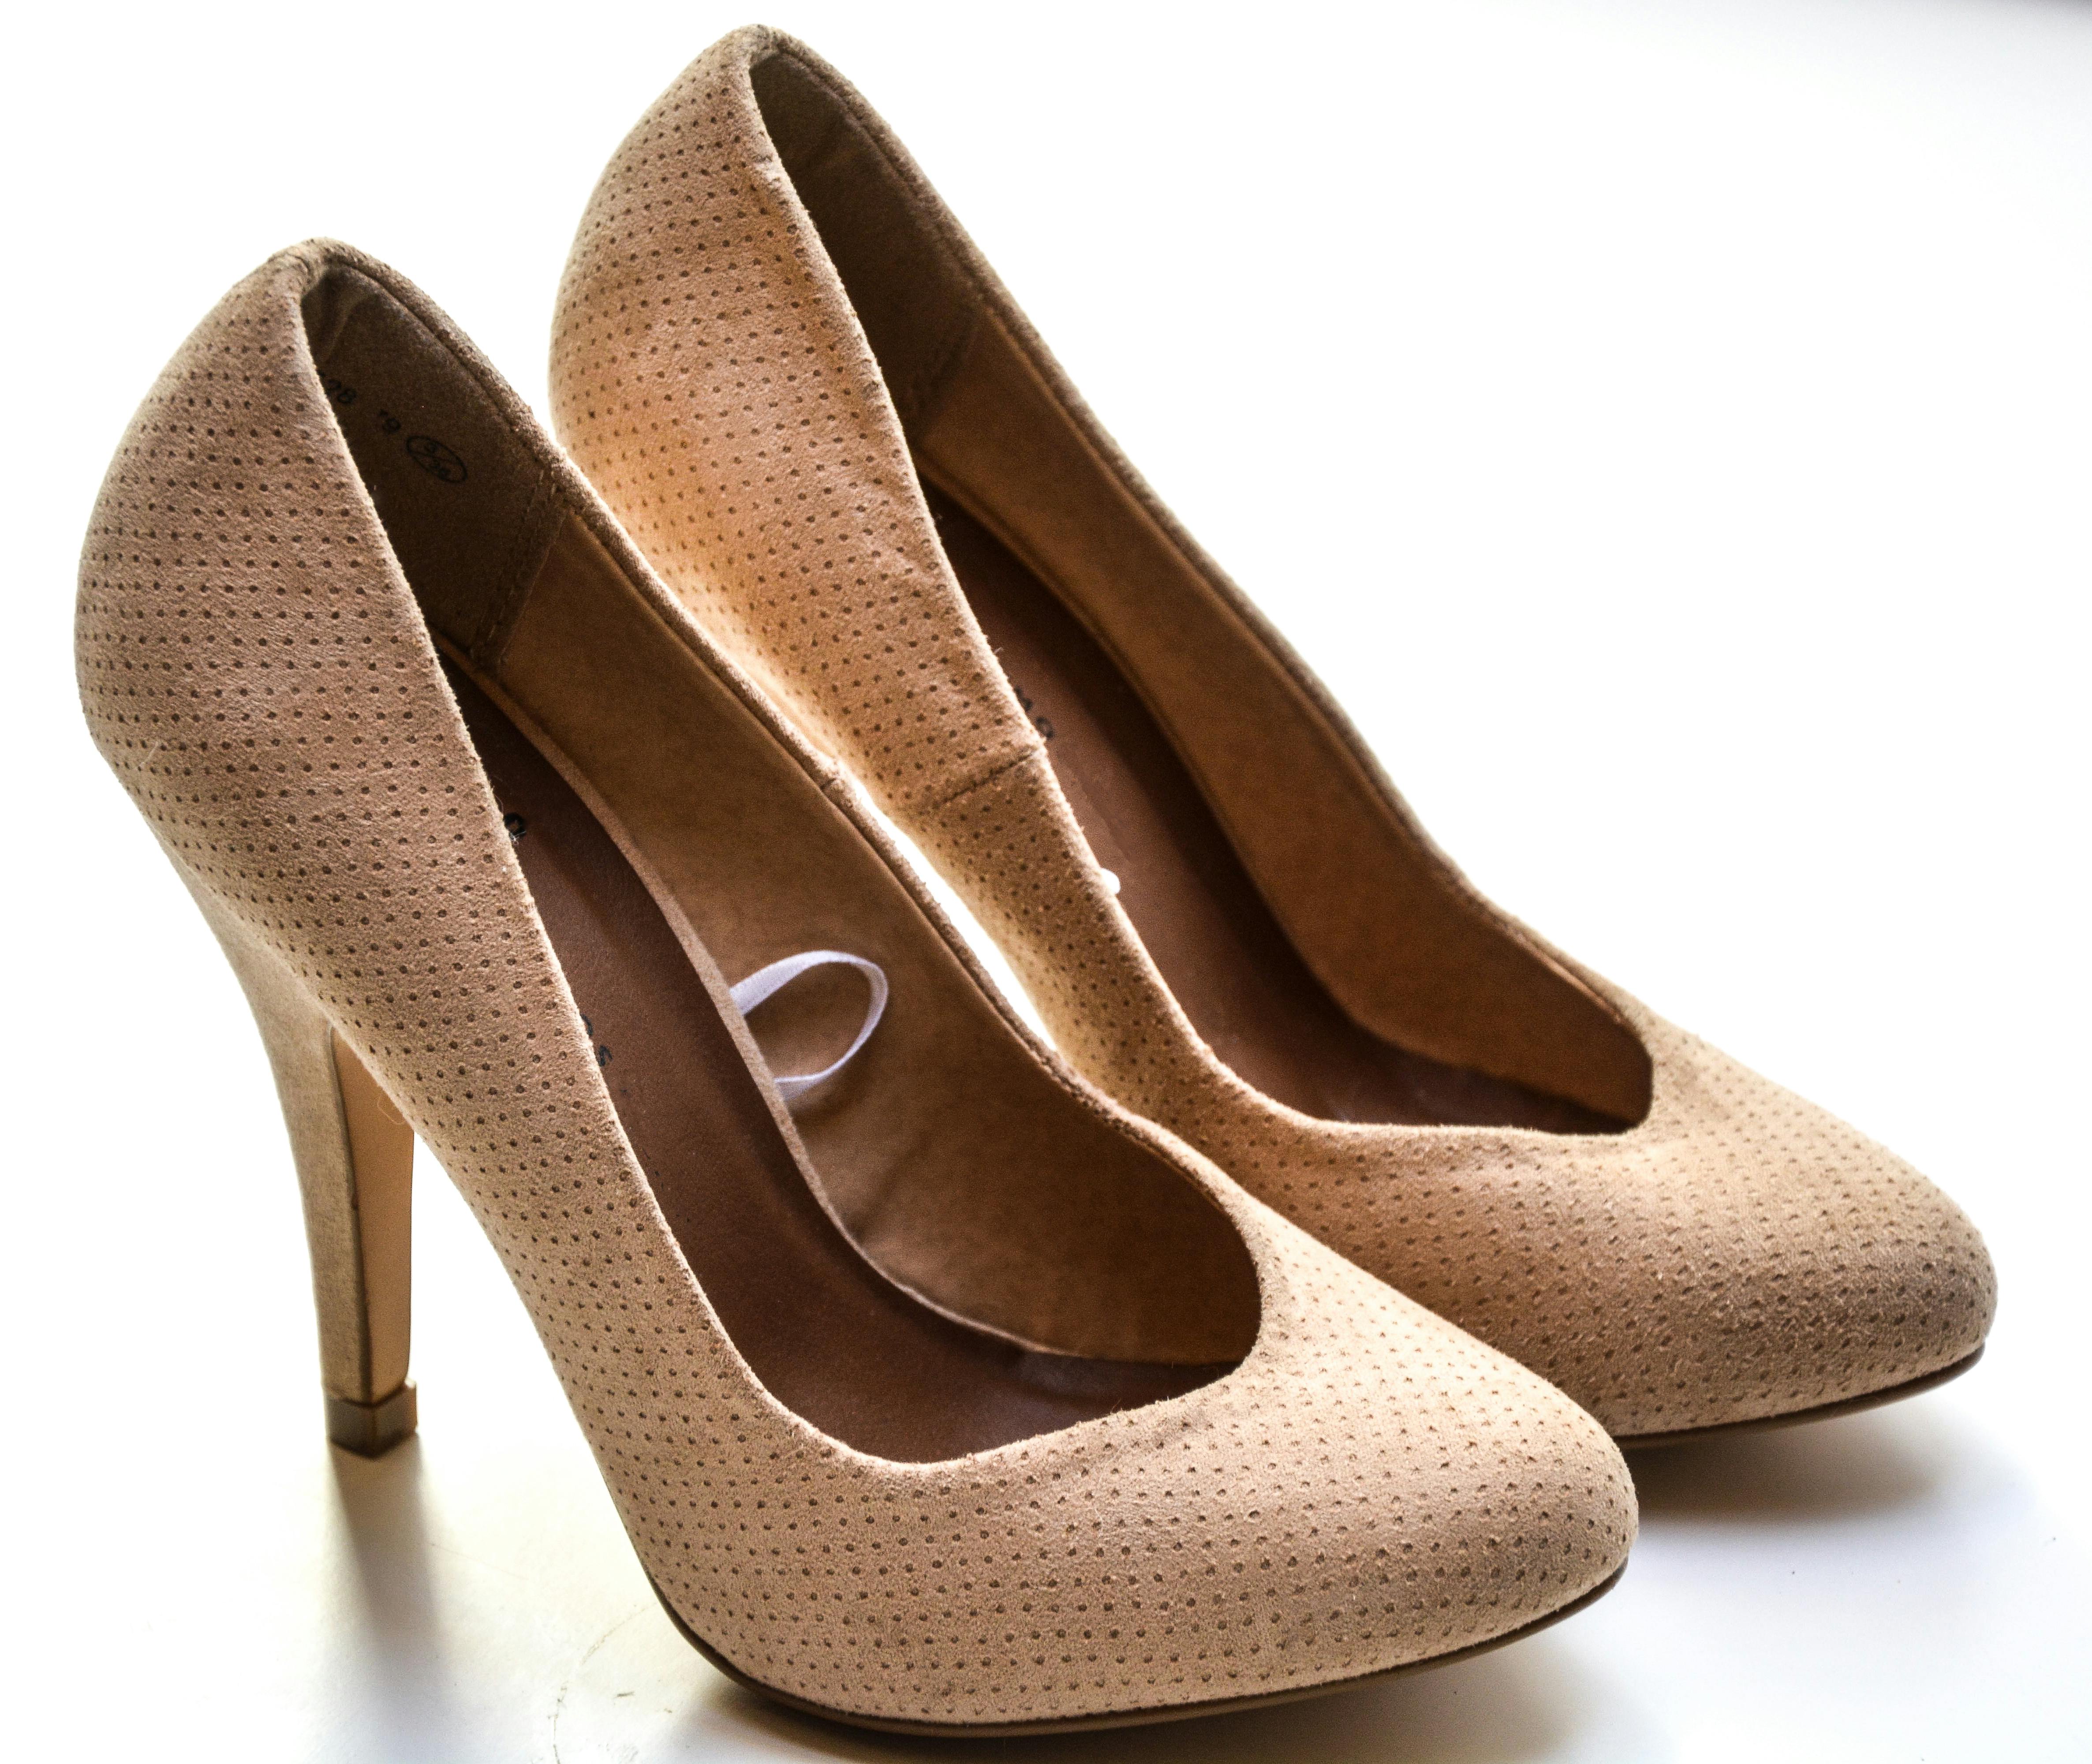 Pumps Women Shoes High Heels Women Sandals 2021 Zipper New Fashion Sum